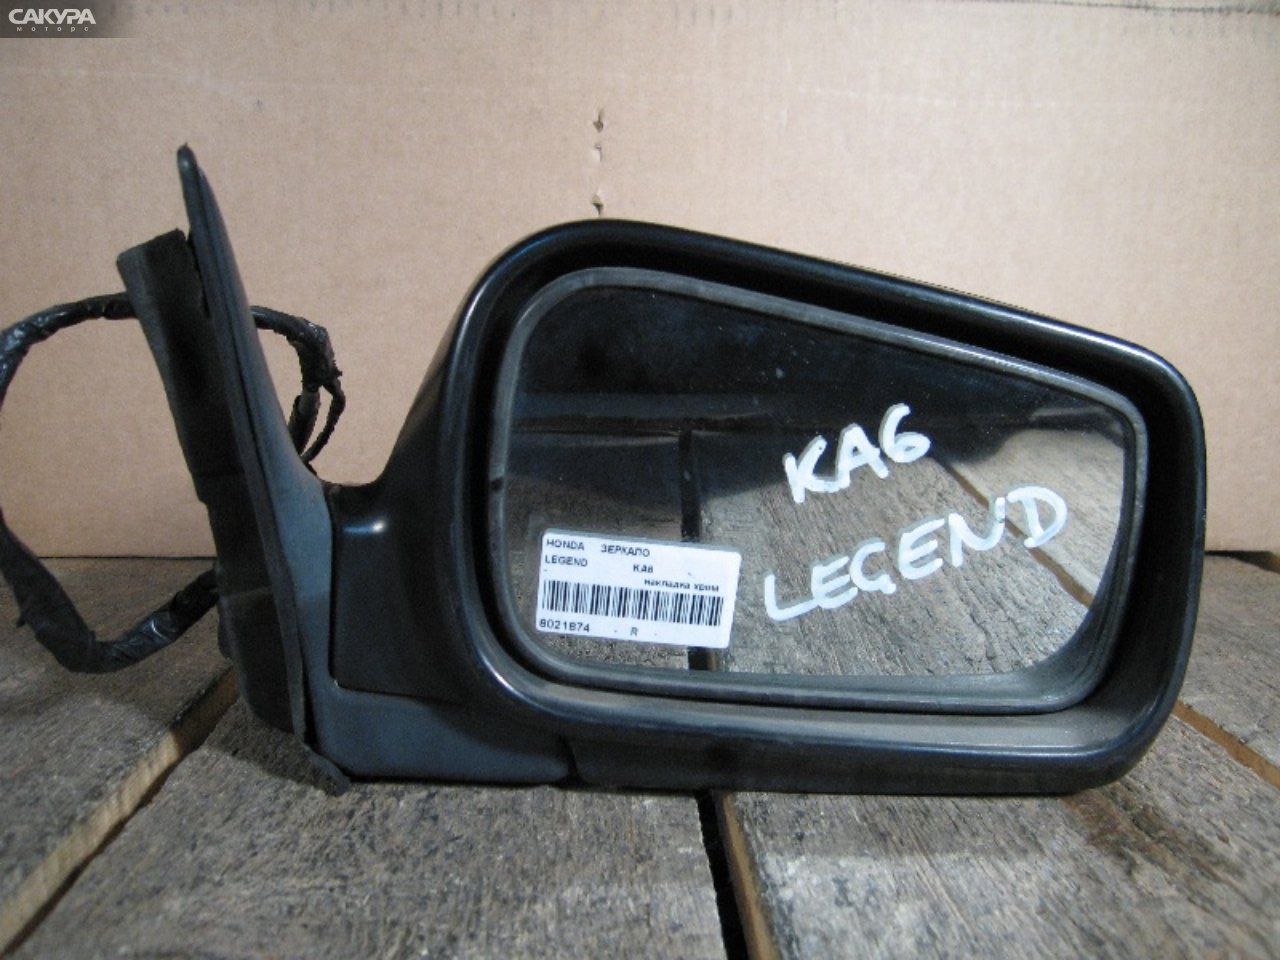 Зеркало боковое правое Honda Legend KA6: купить в Сакура Абакан.